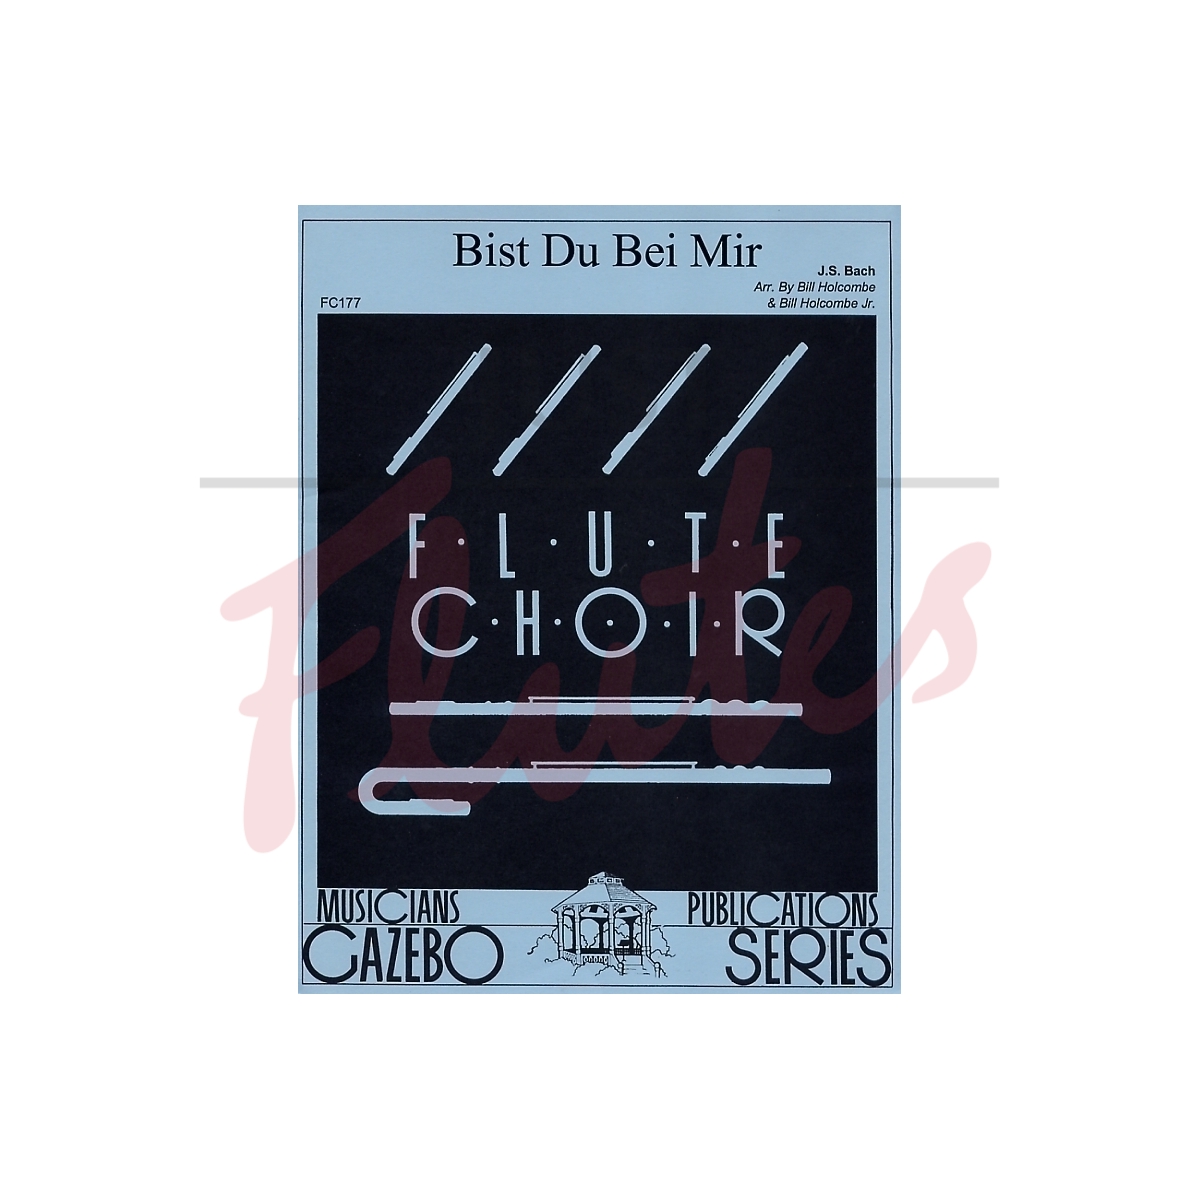 Bist Du Bei Mir [Flute Choir]